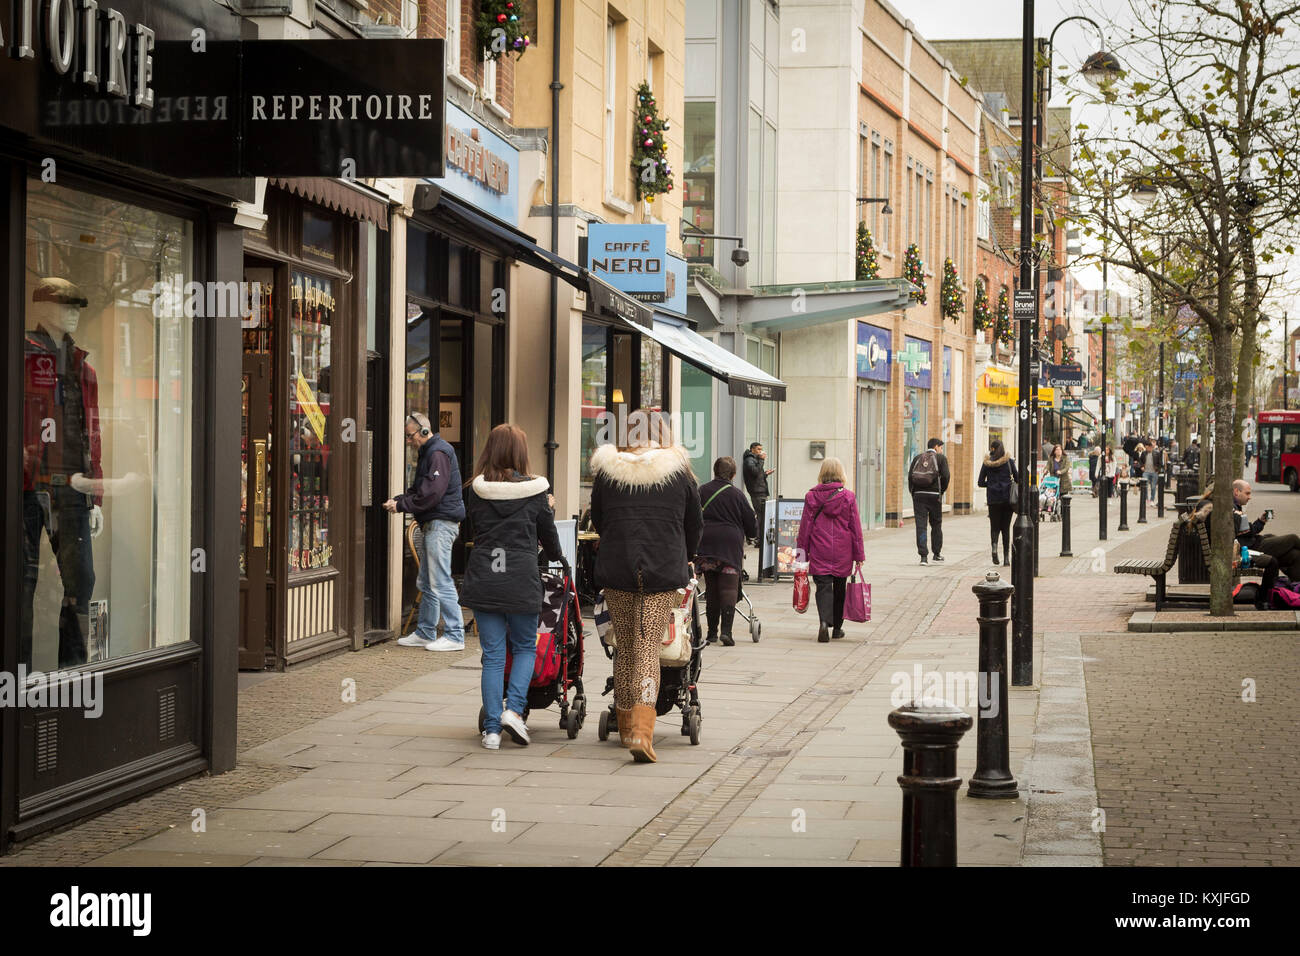 Shopping in Uxbridge, London Borough of Hillingdon, West London UK Stock Photo